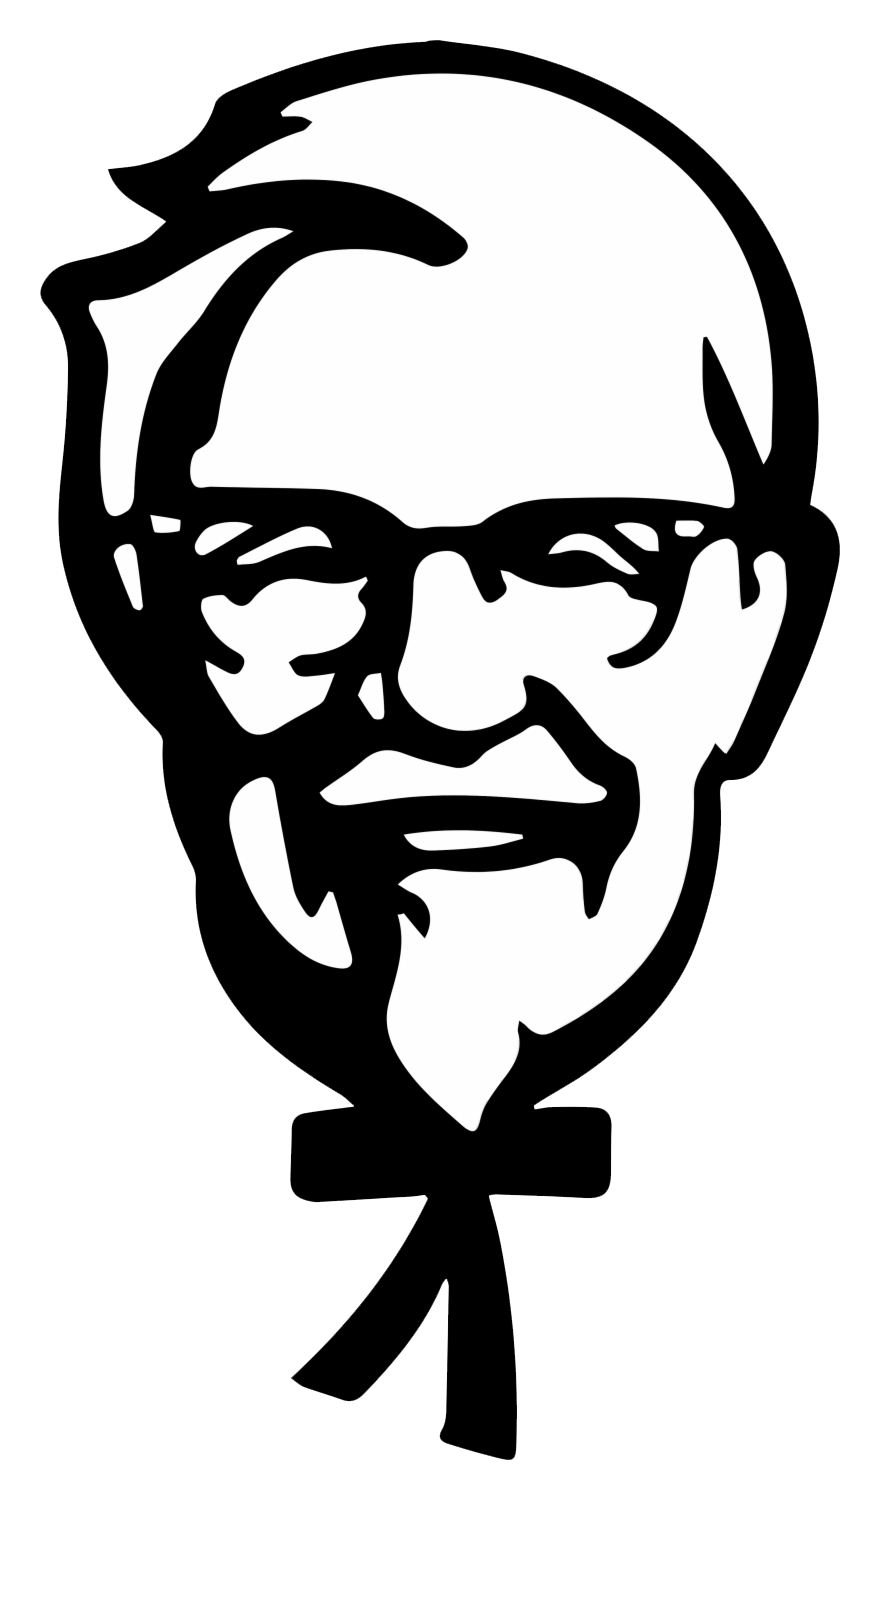 Imagen Transparente del logotipo de KFC